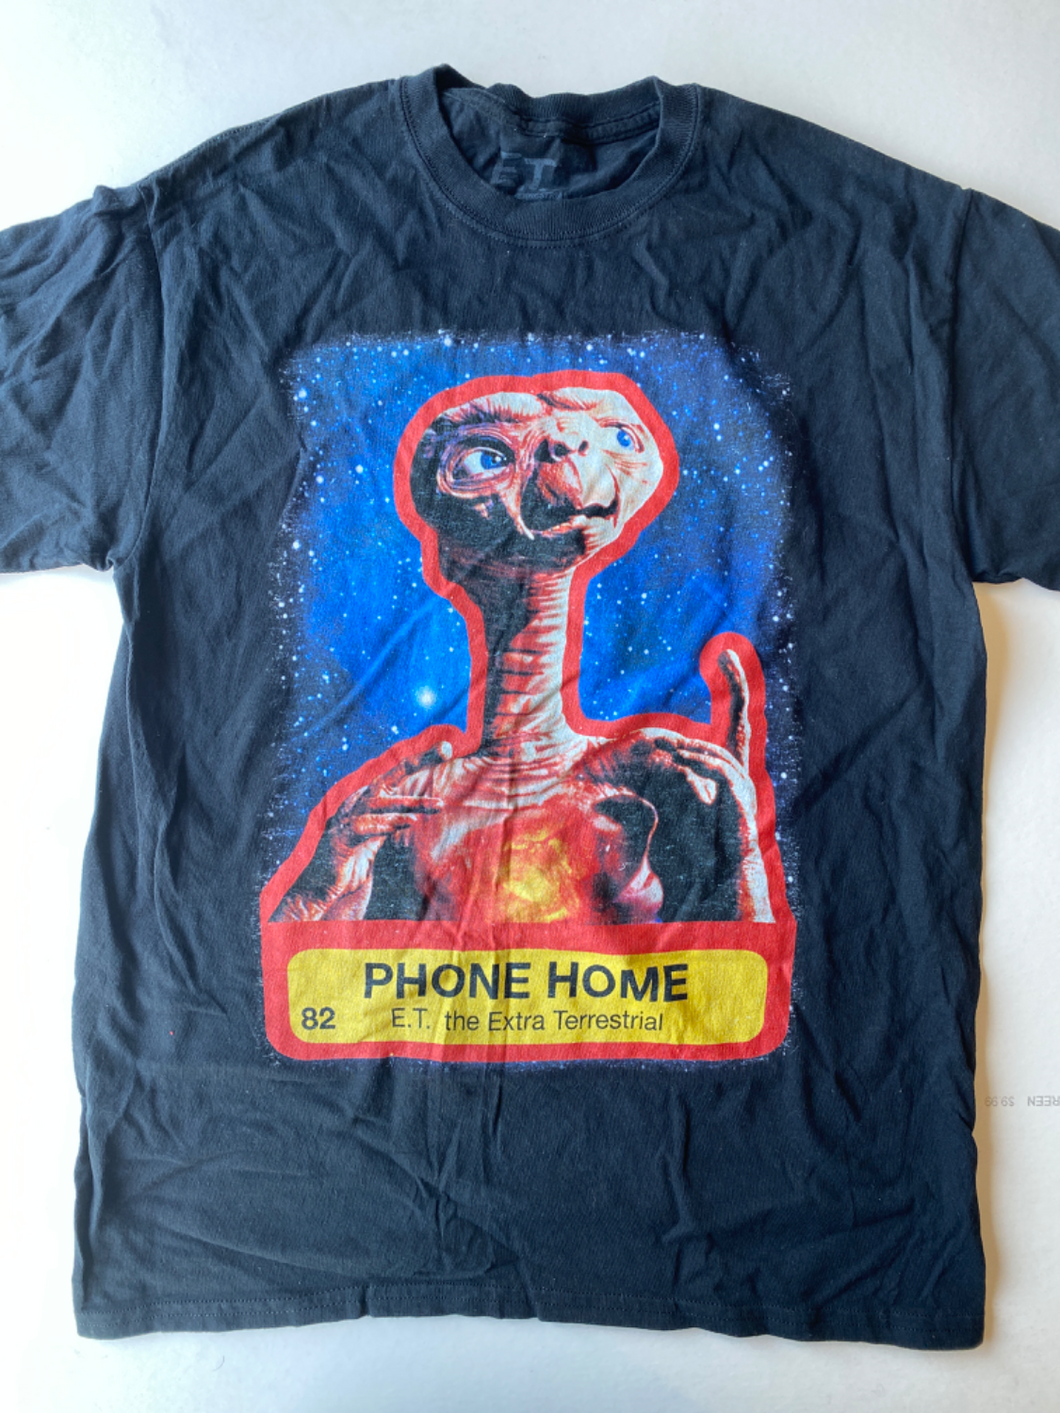 E.T. T-Shirt Size Medium